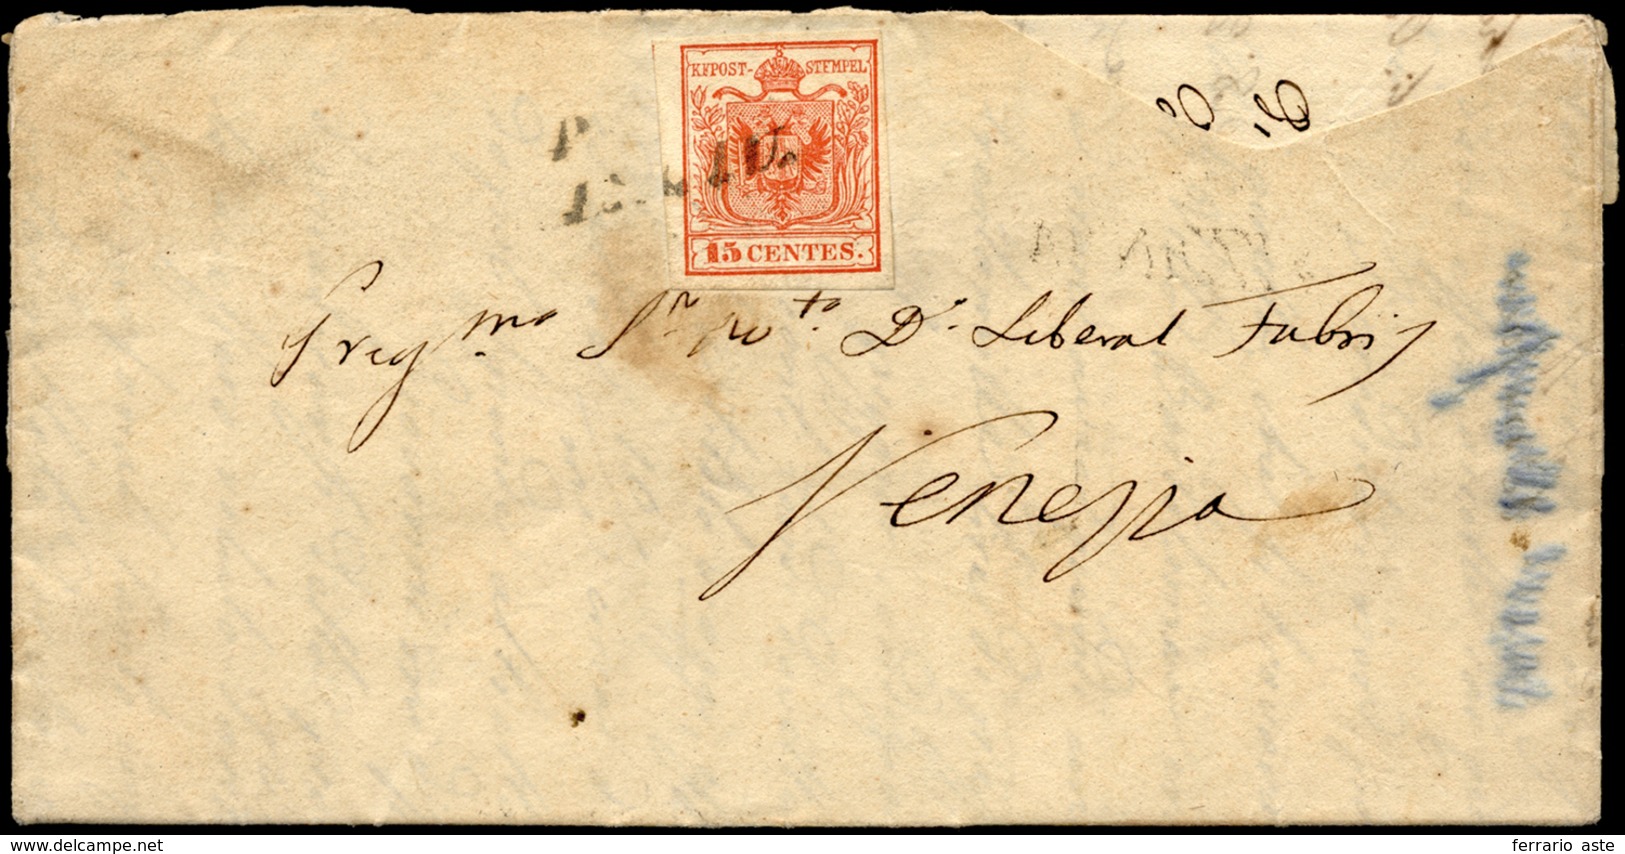 PADOVA, SI Azzurro Grigiastro Punti 7 - 15 Cent. (3a), Perfetto, Su Lettera Del 12/6/1850 (primi Gio... - Lombardije-Venetië